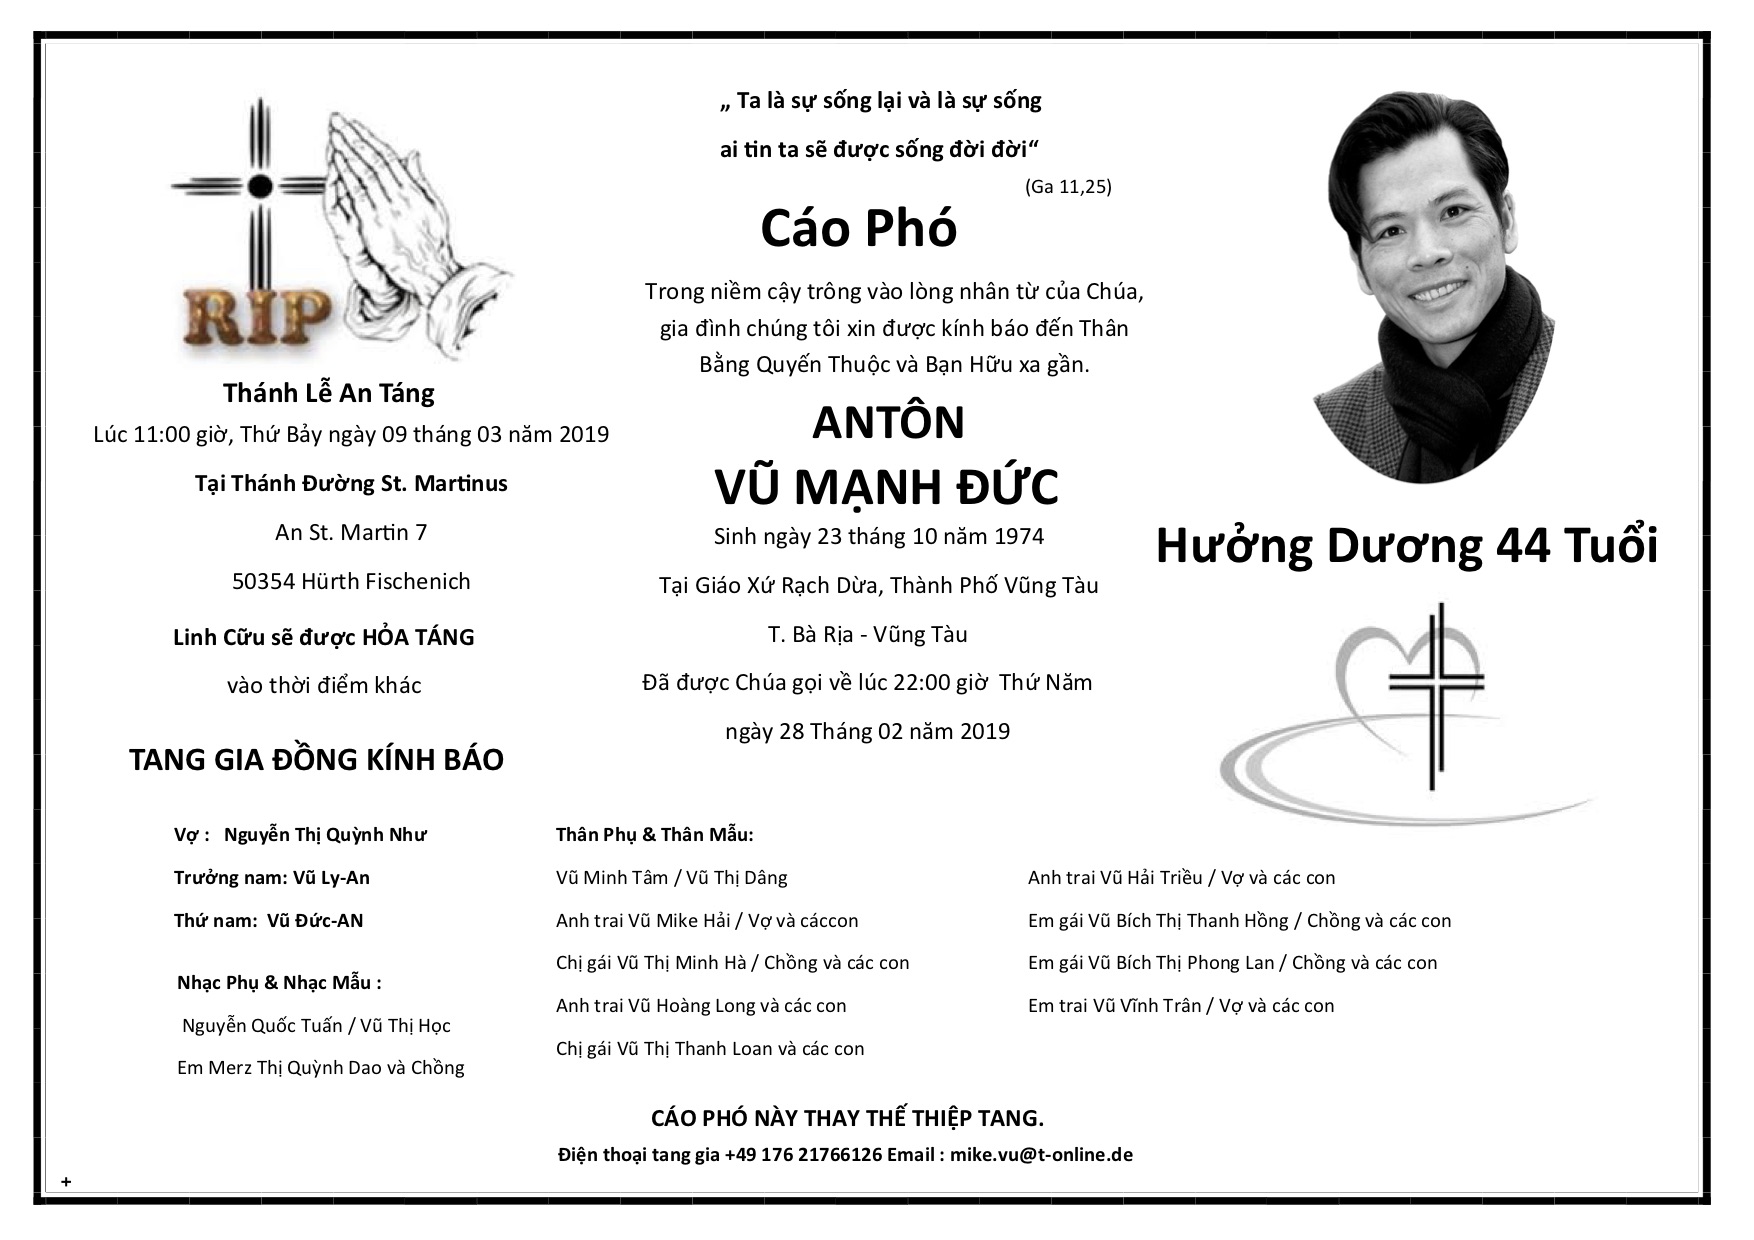 Cao Pho.pdf VU MANH DUC